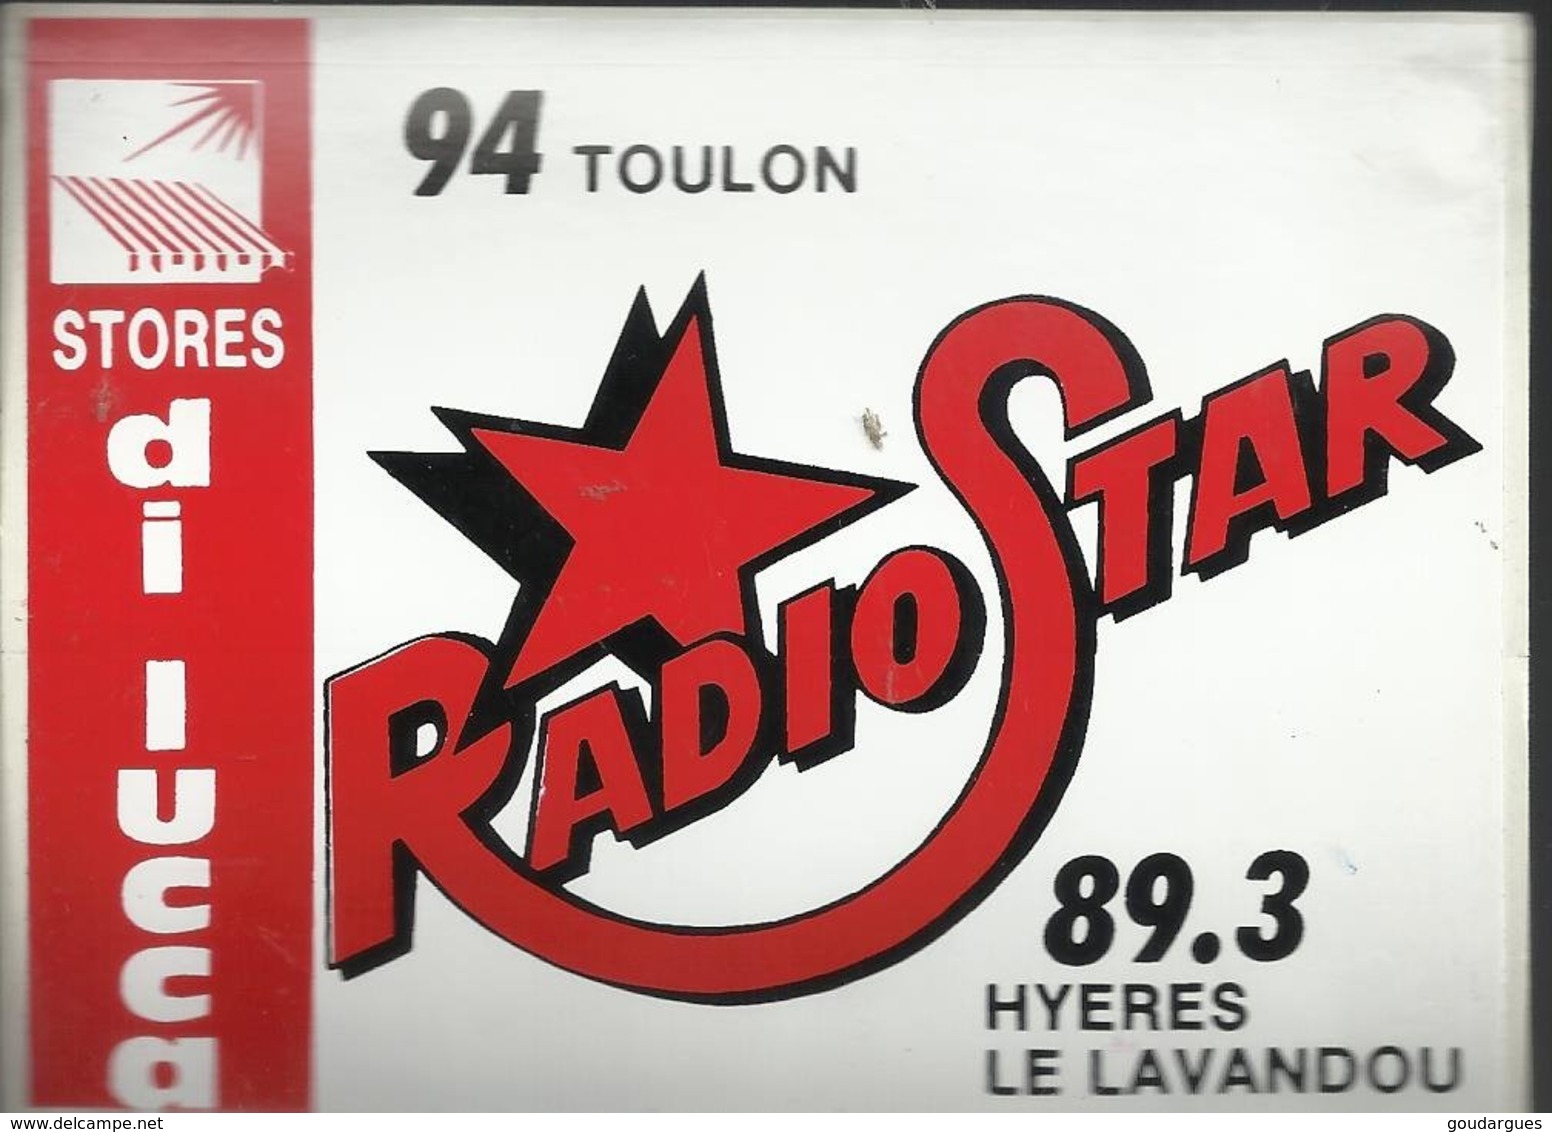 Autocollant - Radio Star - 94 Toulon - 89,3 Hyeres Le Lavandou - Pub Stores Di Lucca - Autocollants